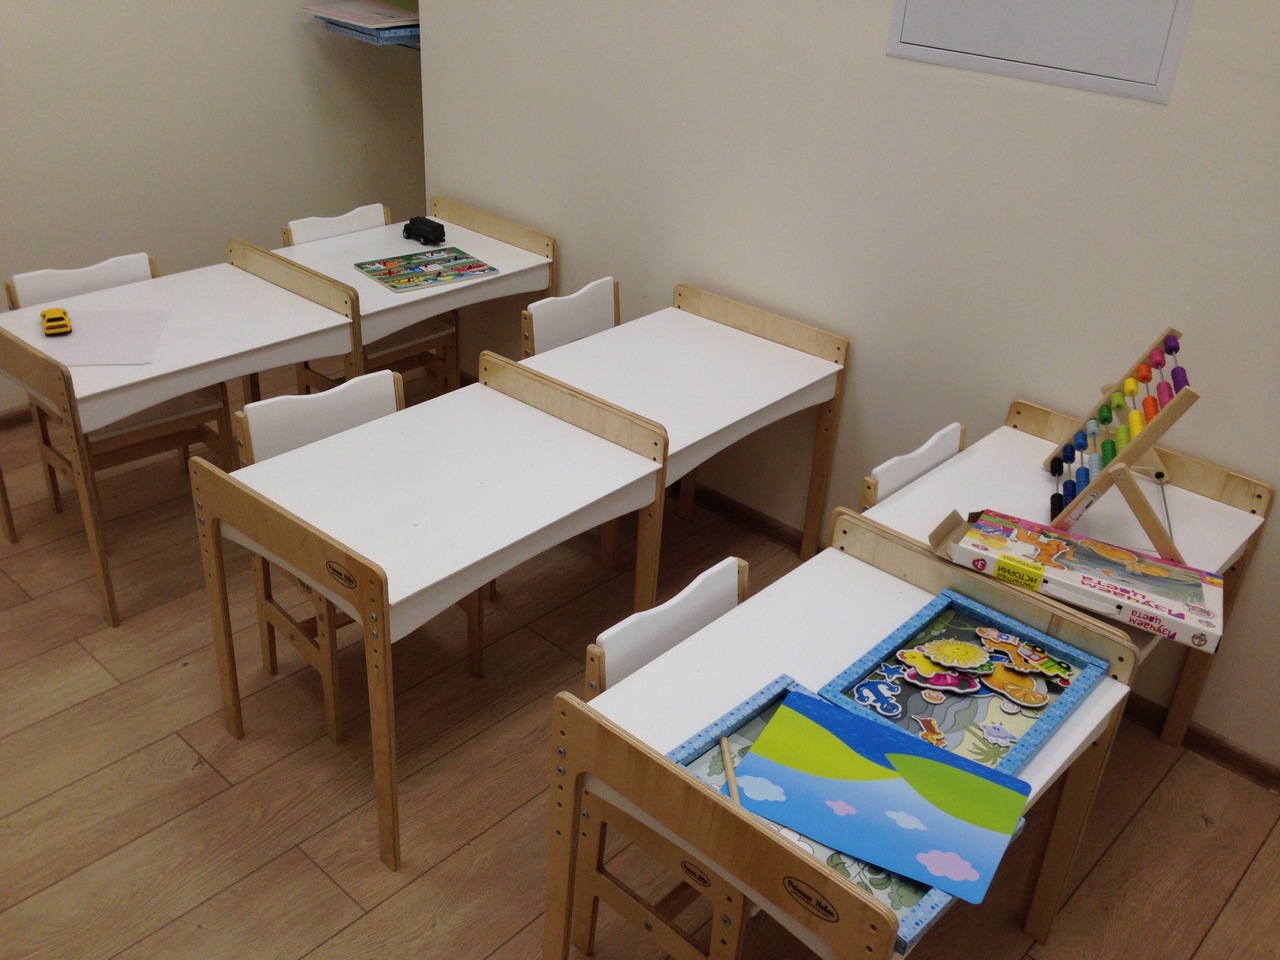 Мебель для детского сада столы и стулья